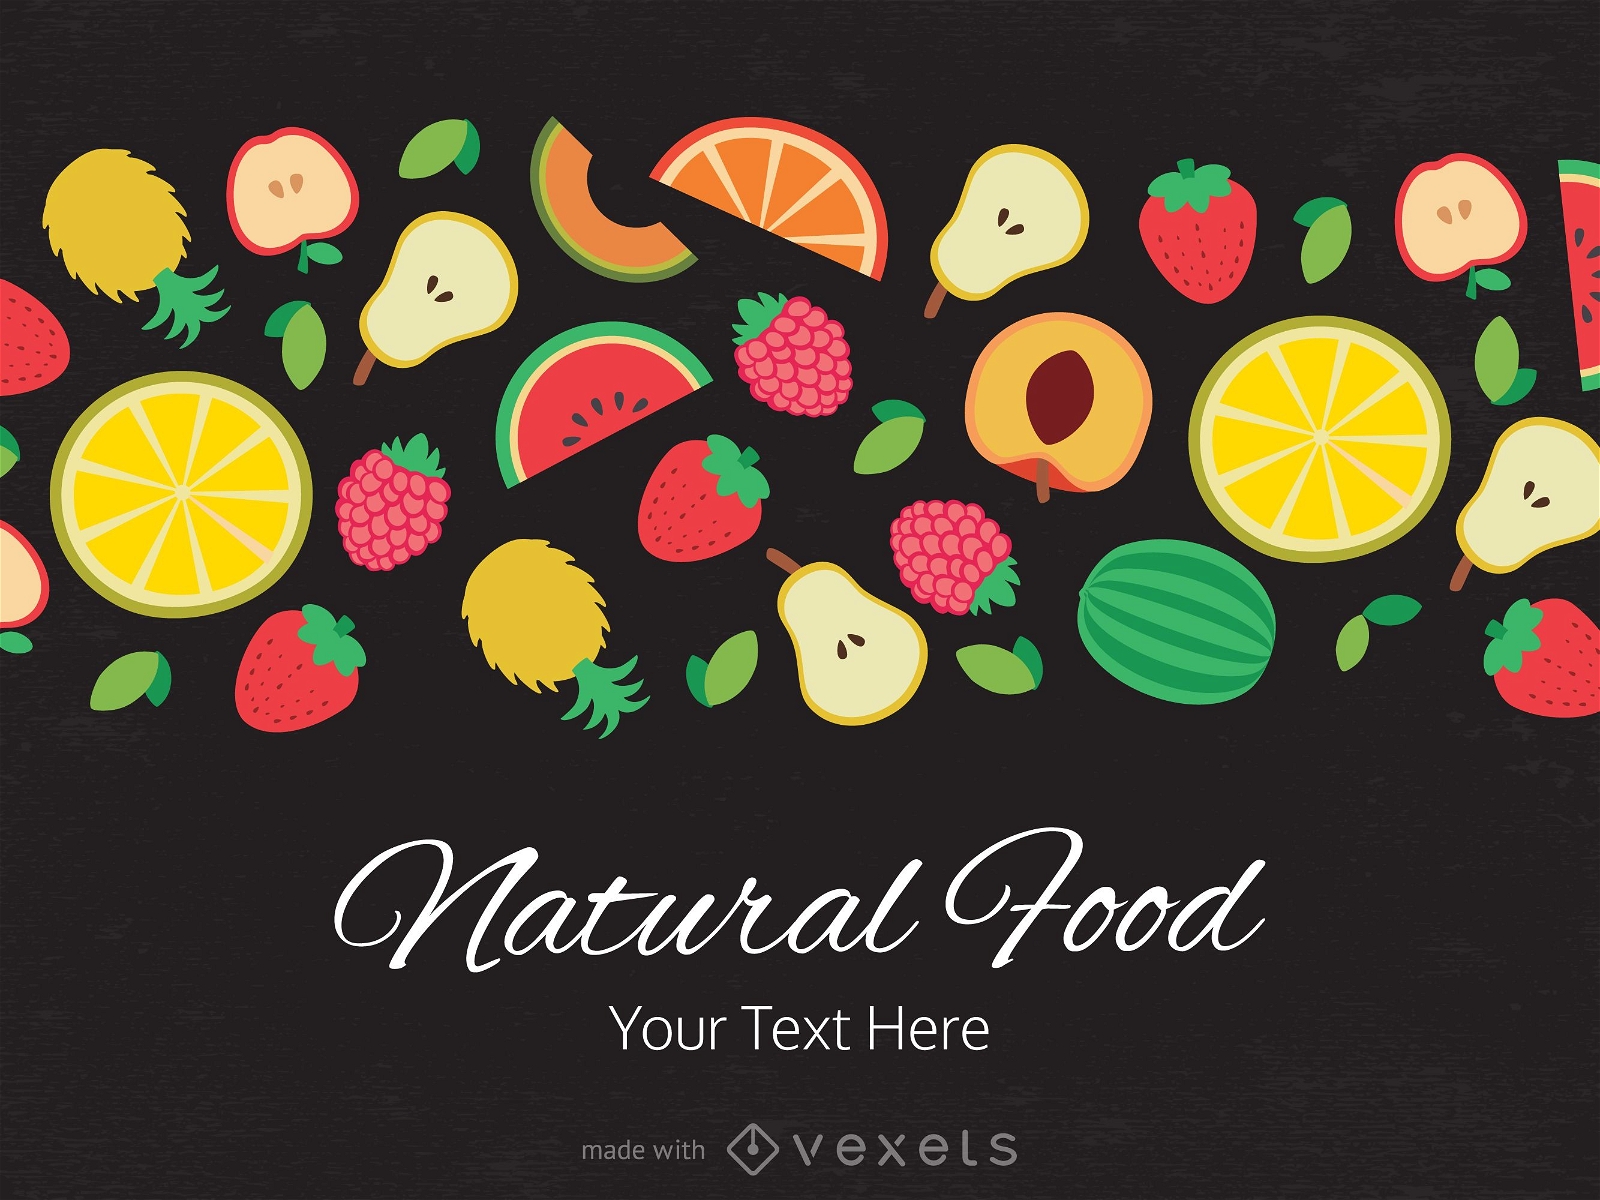 Cartel publicitario plano de frutas y verduras